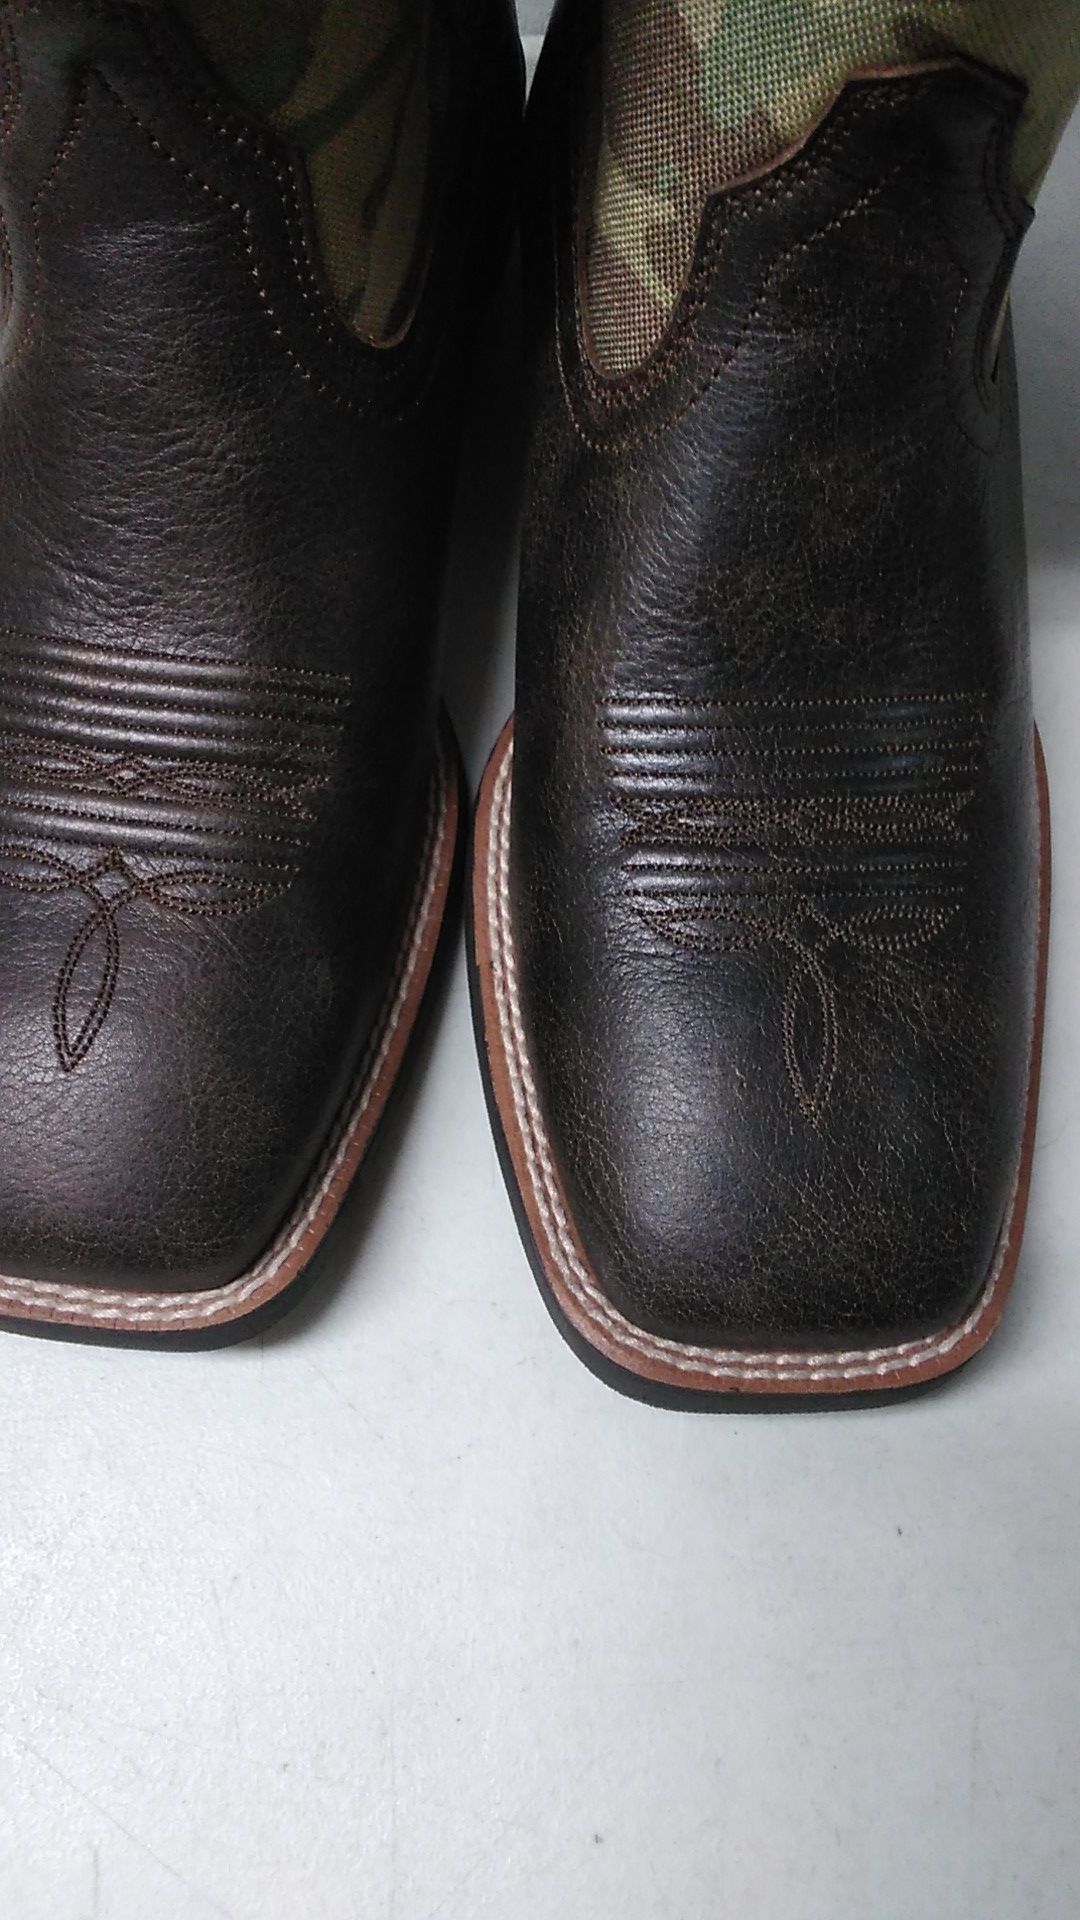 Cowboy boots Ariat $120